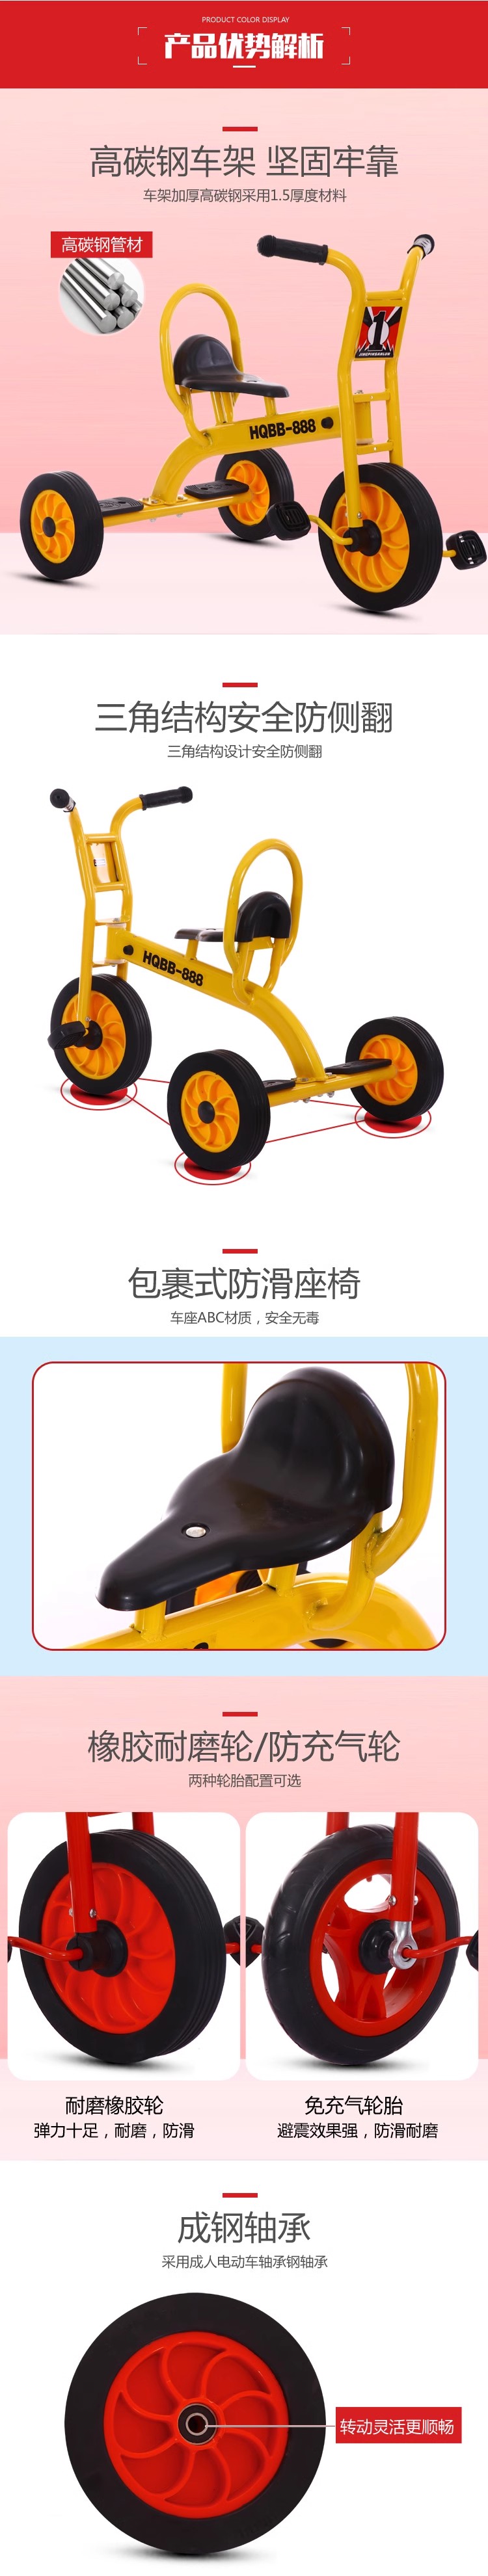 幼儿园三轮车 户外体育运动玩具器械小车 儿童脚踏车 幼教童车